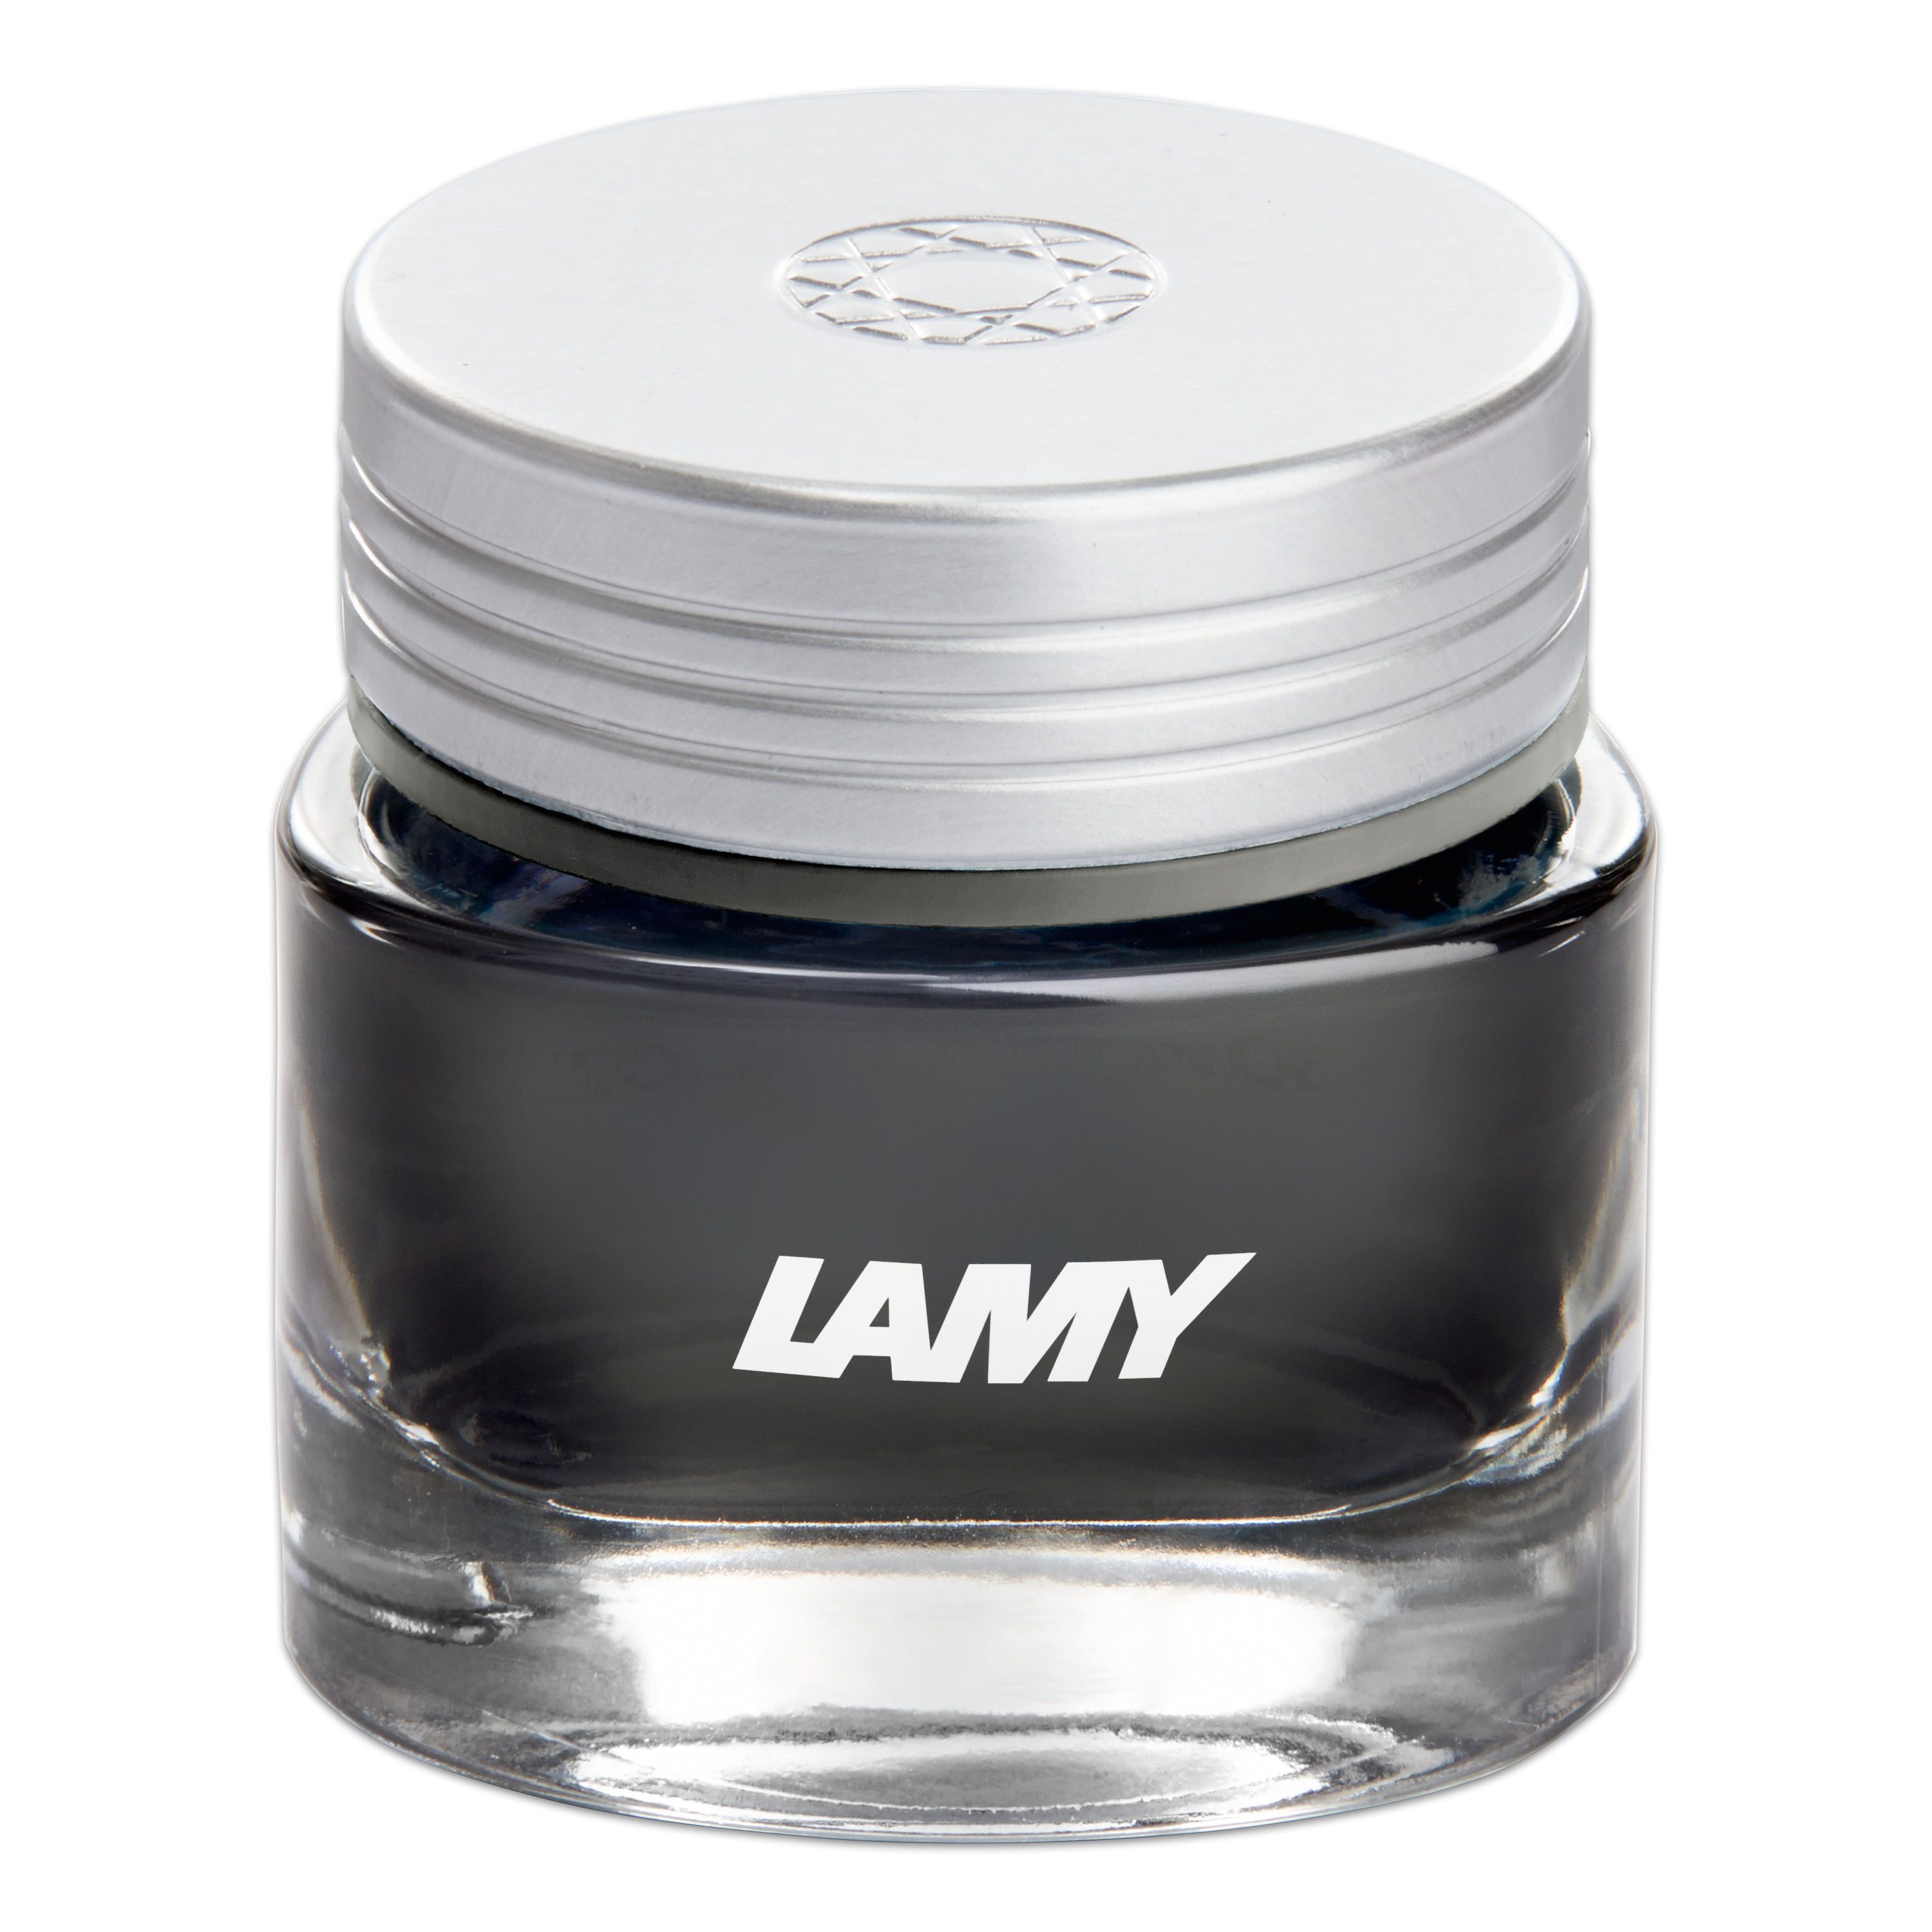 LAMY LAMY Tintenglas T53 690 AGATE grau Tintenglas